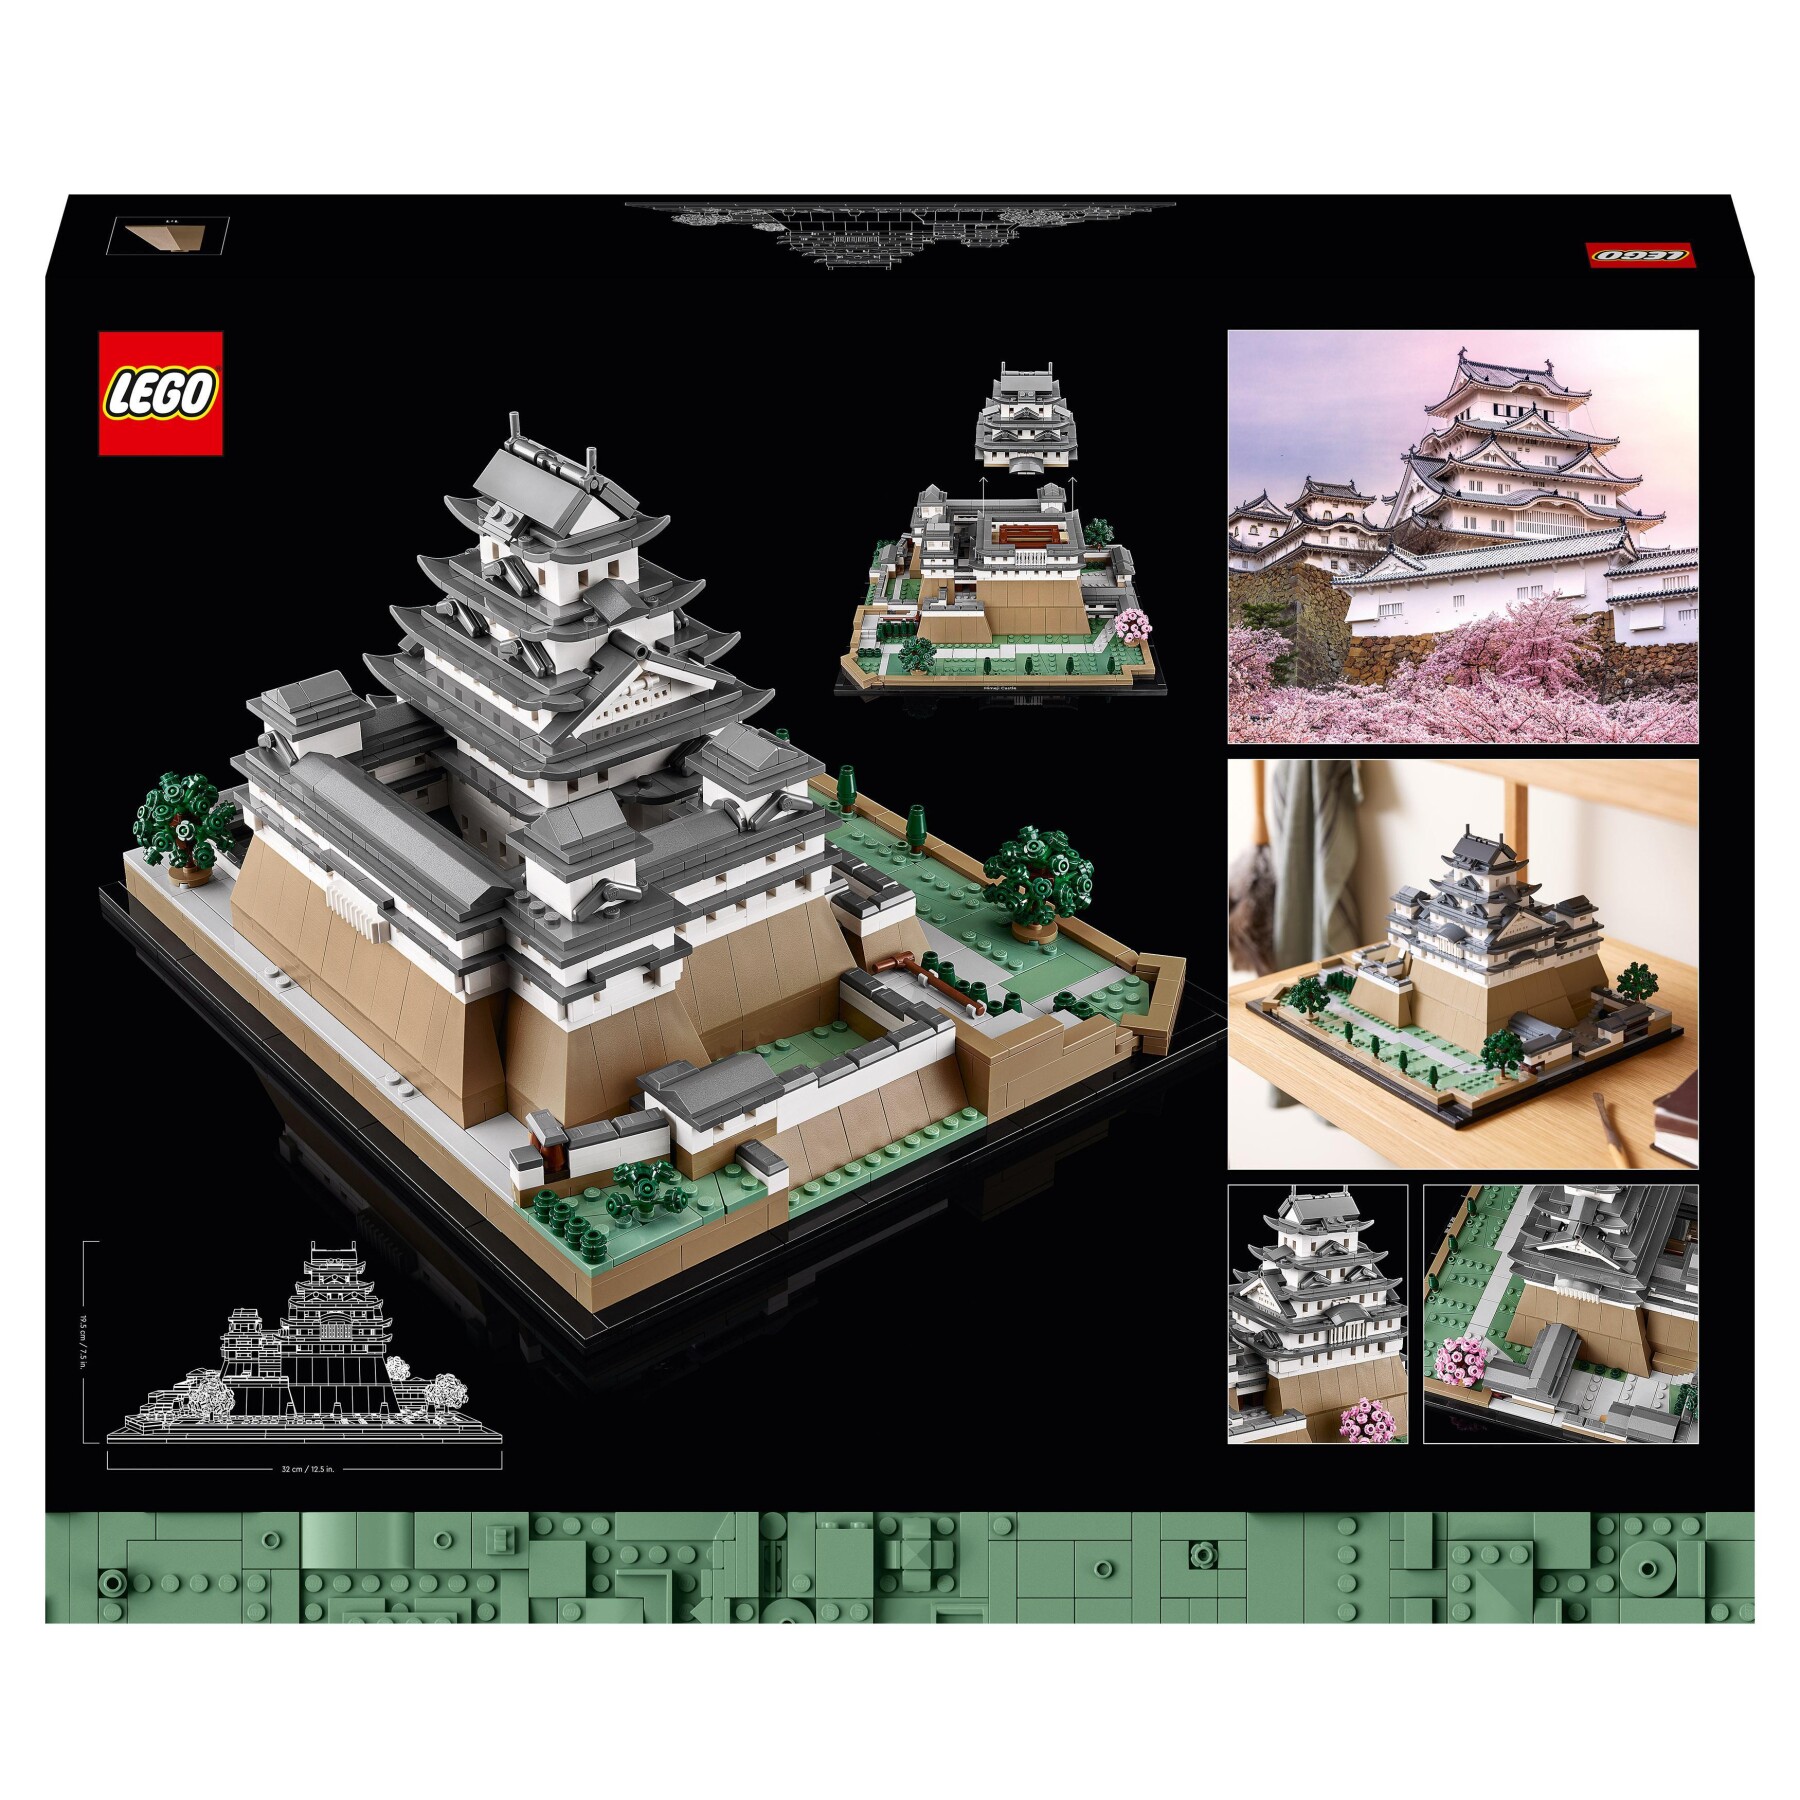 Lego architecture 21060 castello di himeji, kit modellismo adulti, collezione monumenti, albero ciliegio in fiore da costruire - LEGO ARCHITECTURE